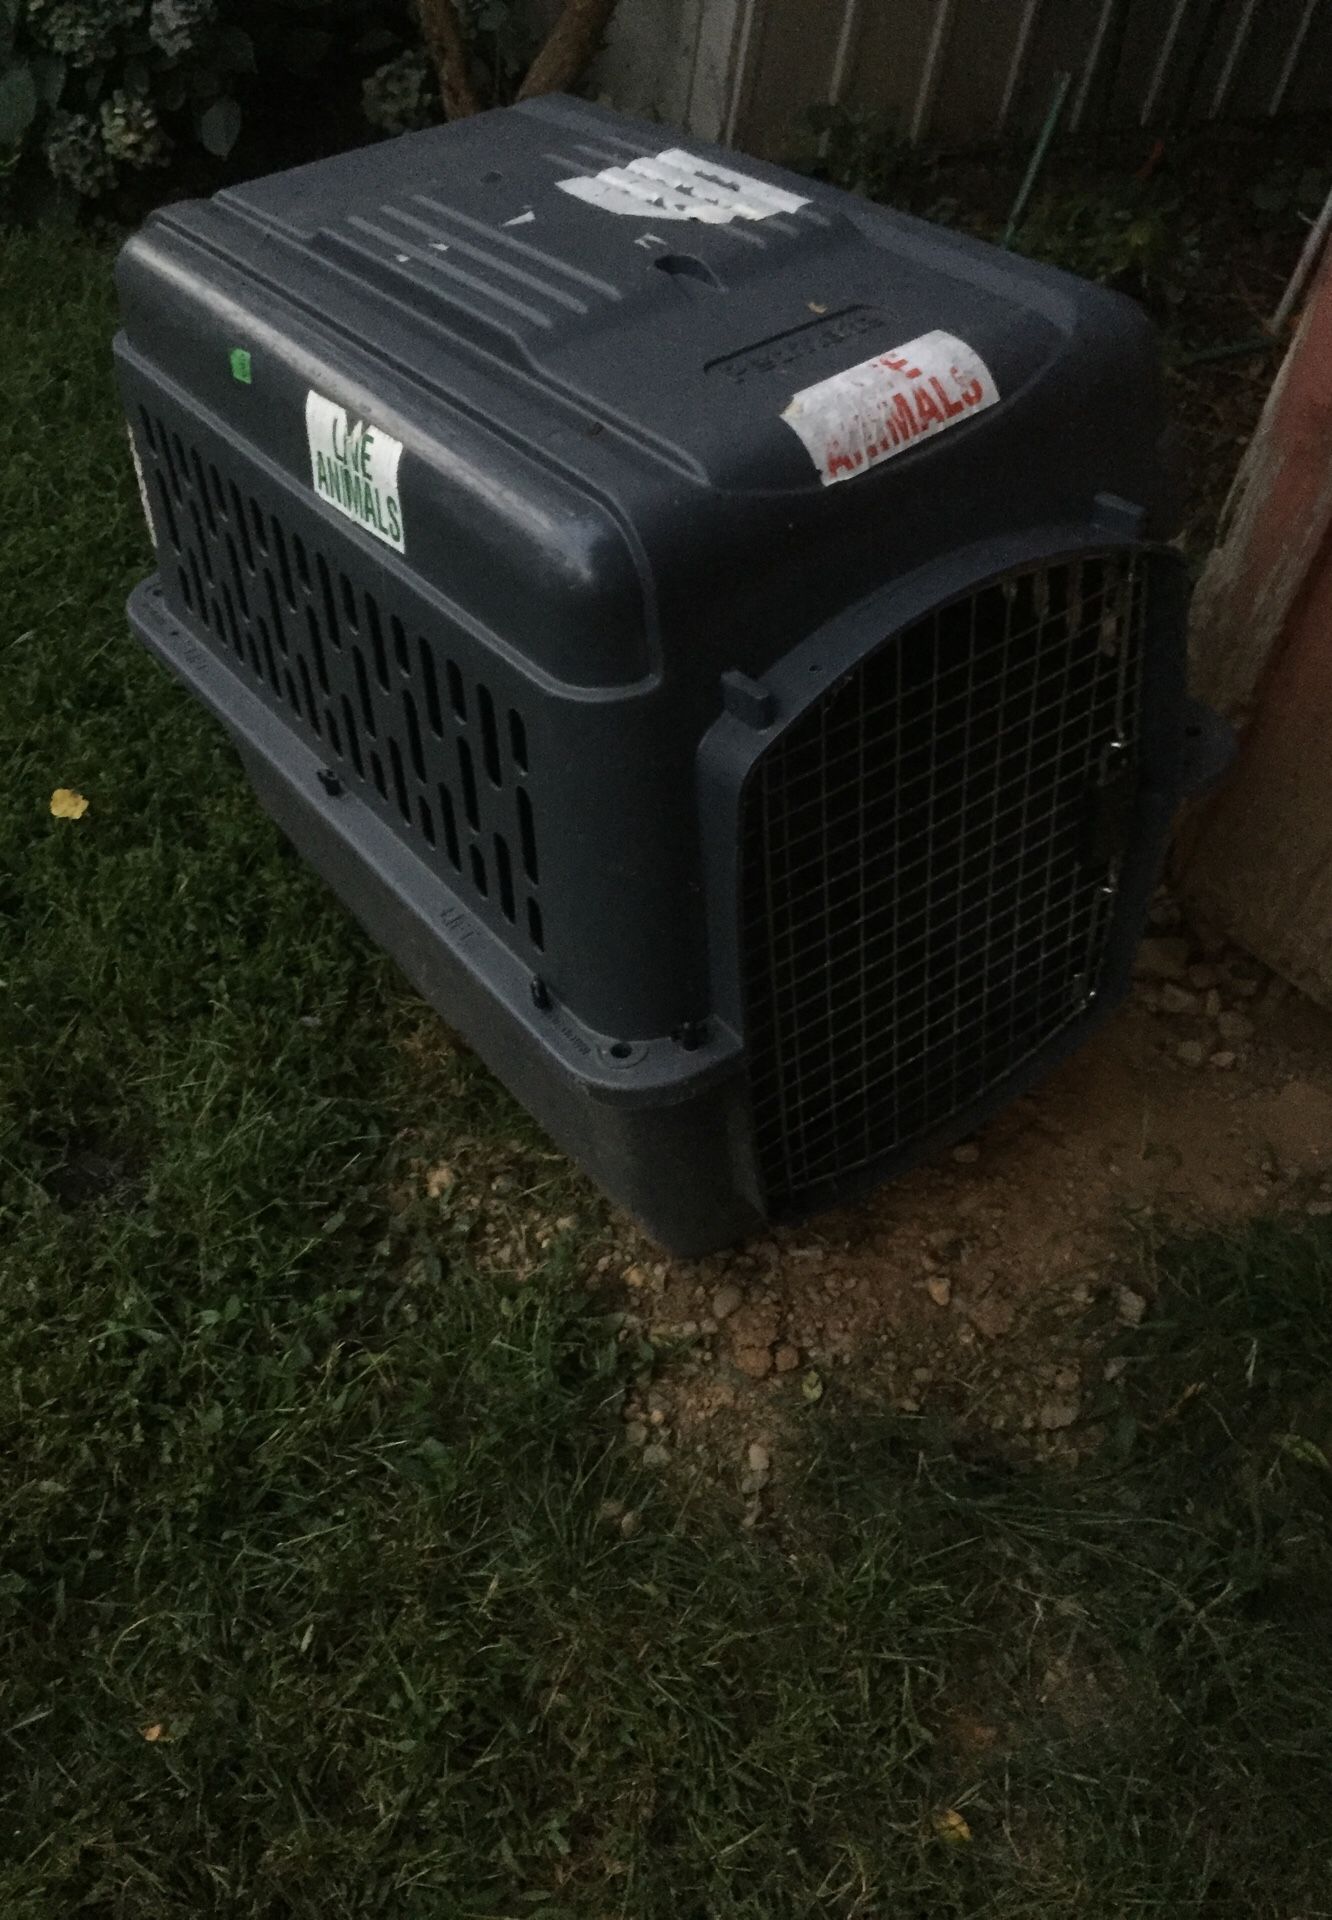 Dog kennel carrier